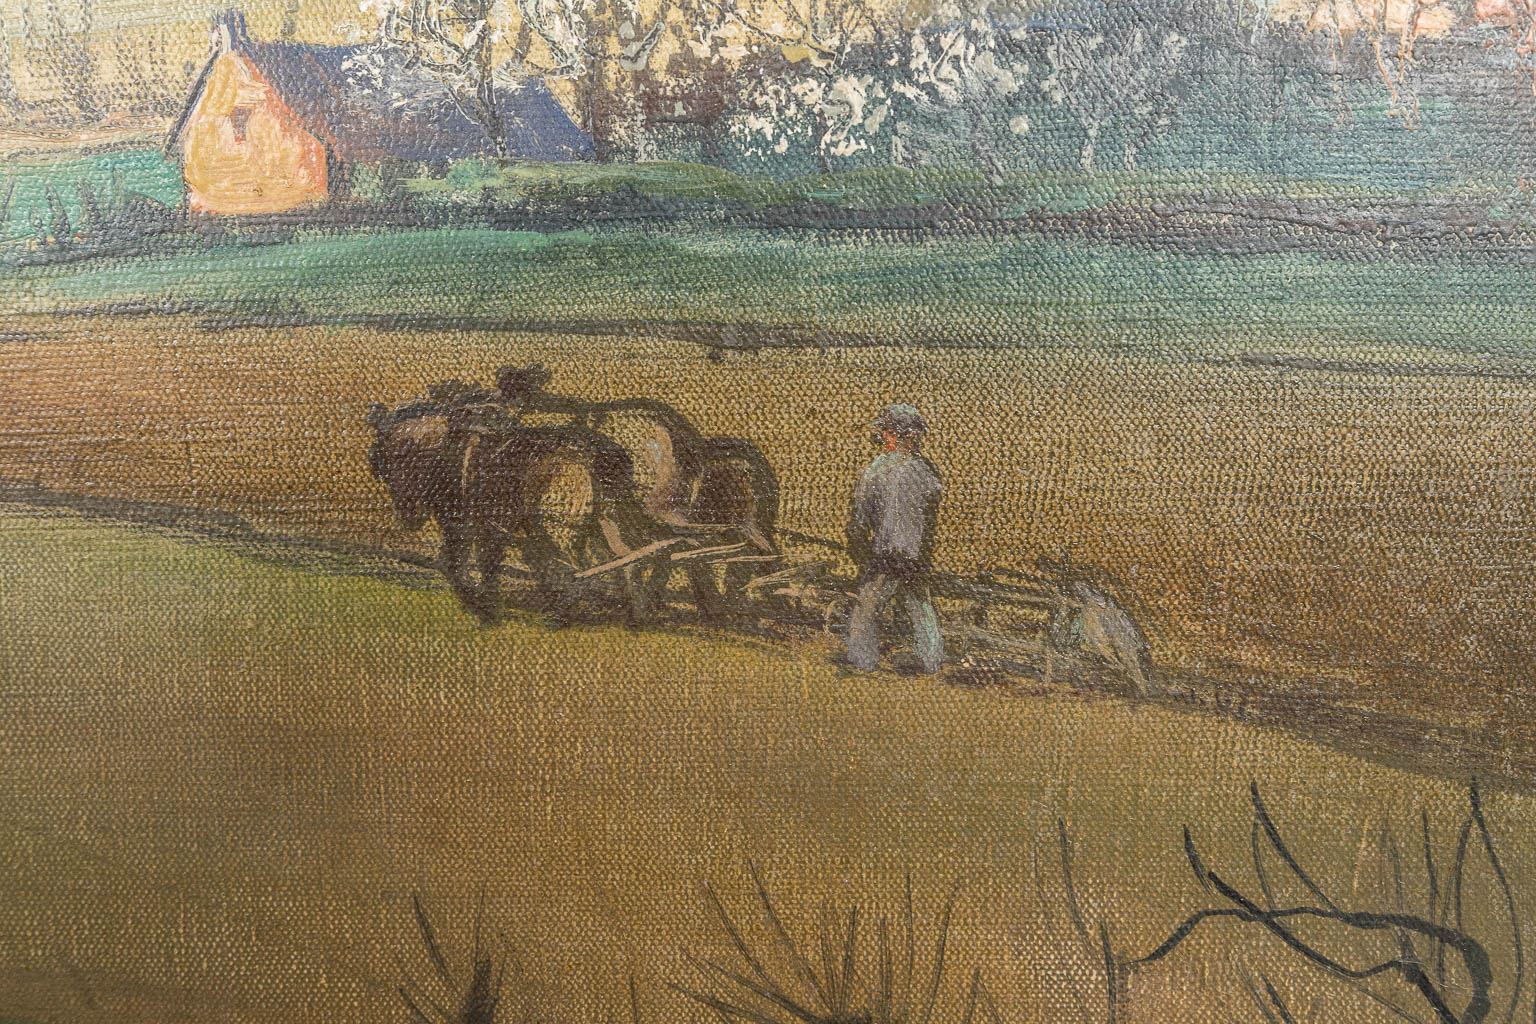 Frans PEREBOOM (1897-1969) 'Lente in 't Vlaamsche Land', een schilderij olie op doek. (125 x 102 cm)